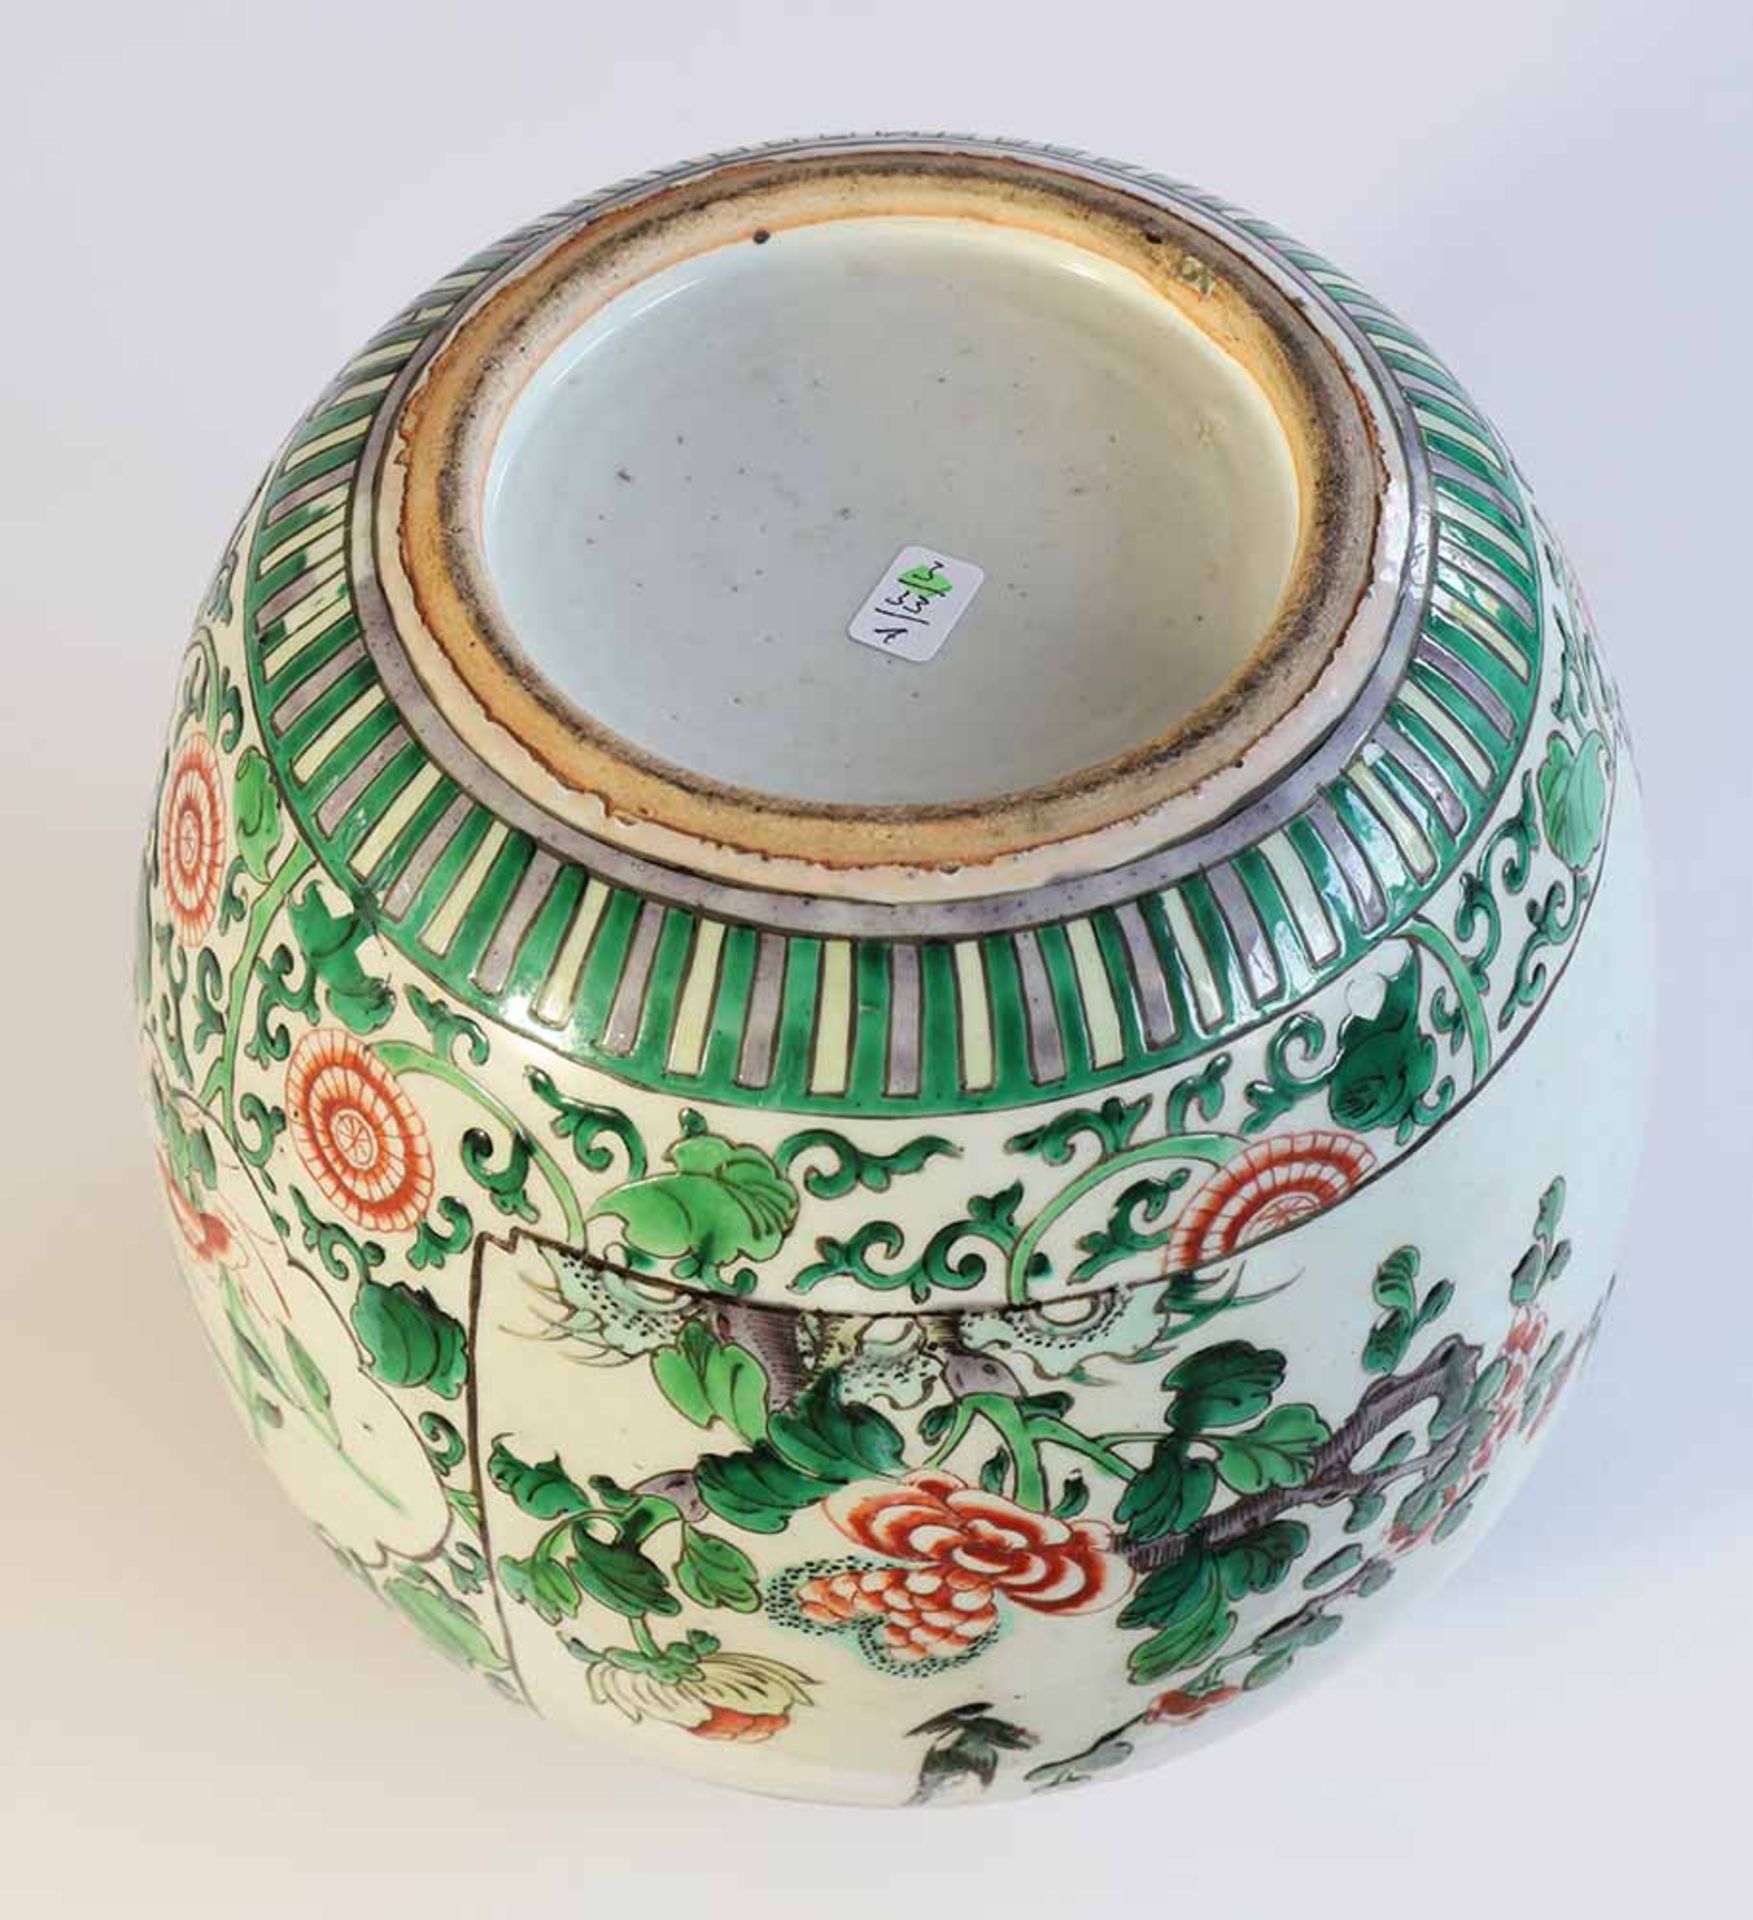 China, Qing DynastieWucai Ginger Jar, Qing Dynasty, Ingwertopf ChinaQing DynastyWucai Ingwertopf. - Image 3 of 3